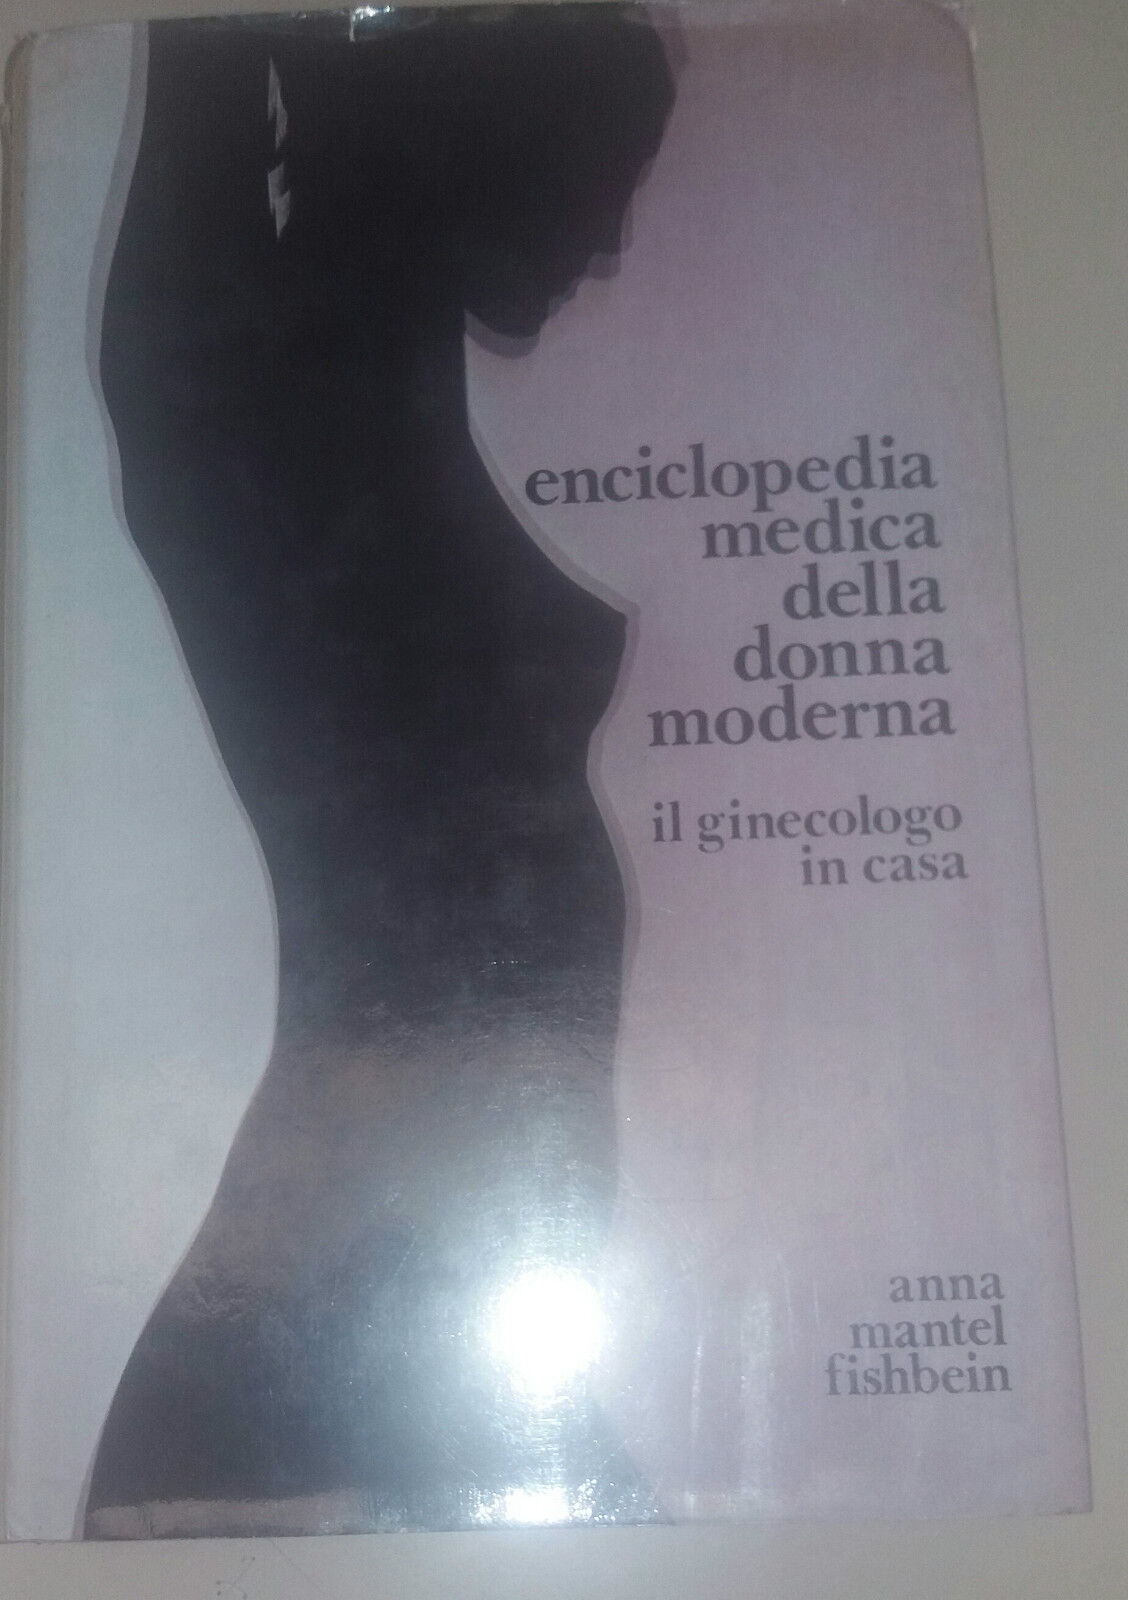 ENCICLOPEDIA MEDICA DELLA DONNA MODERNA - ANNA MANTEL FISHBEIN -C.I.L - 1978